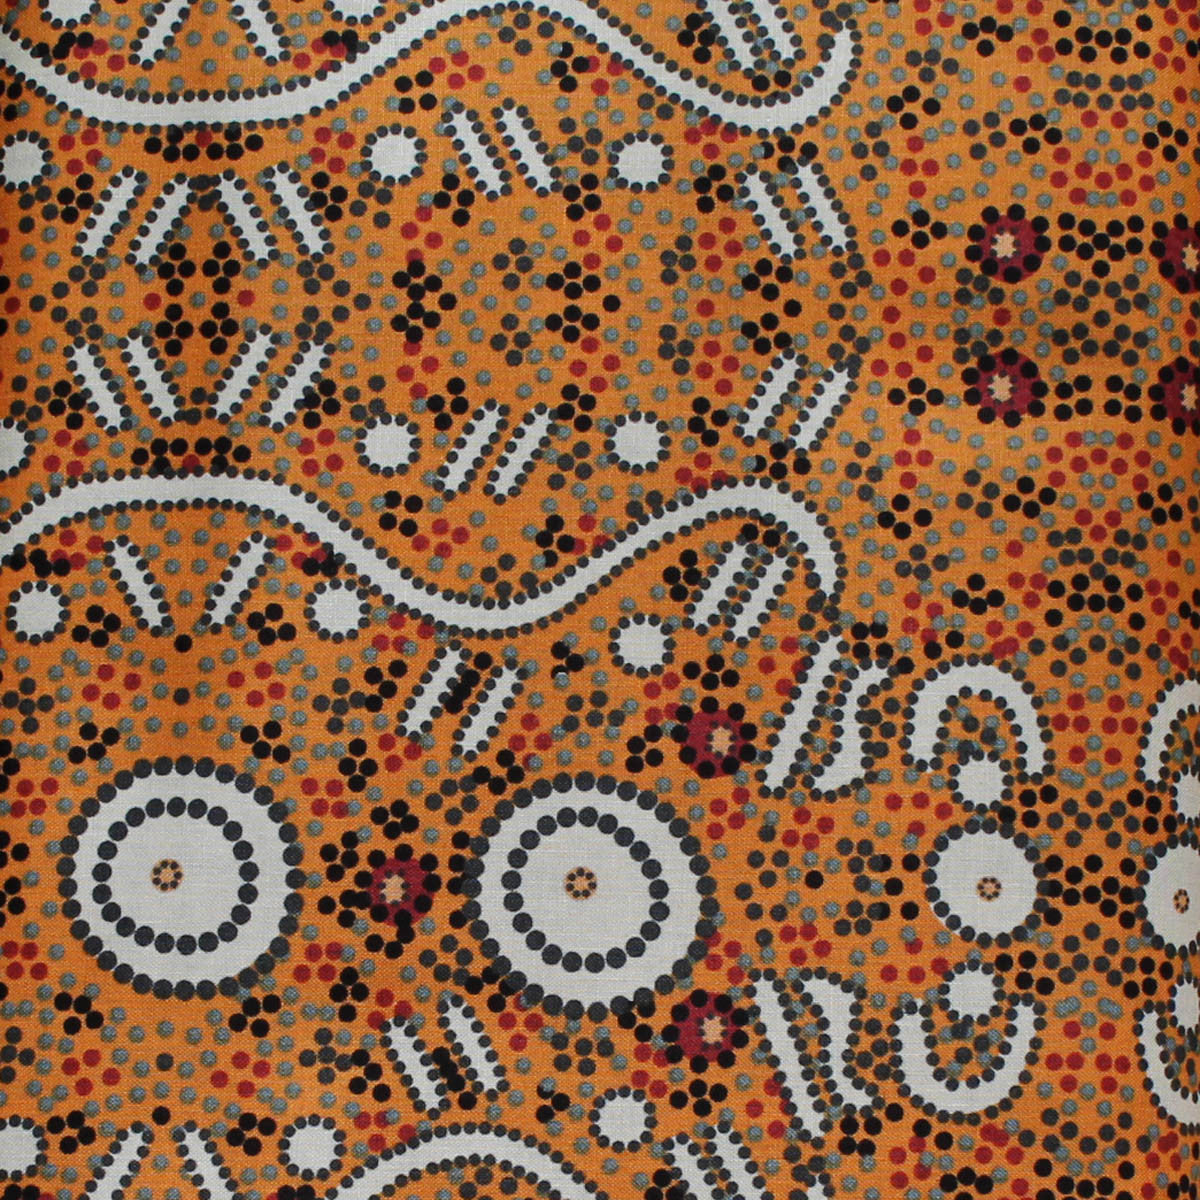 WATER DREAMING YELLOW by Australian Aboriginal Artist A. NAPANANGKA